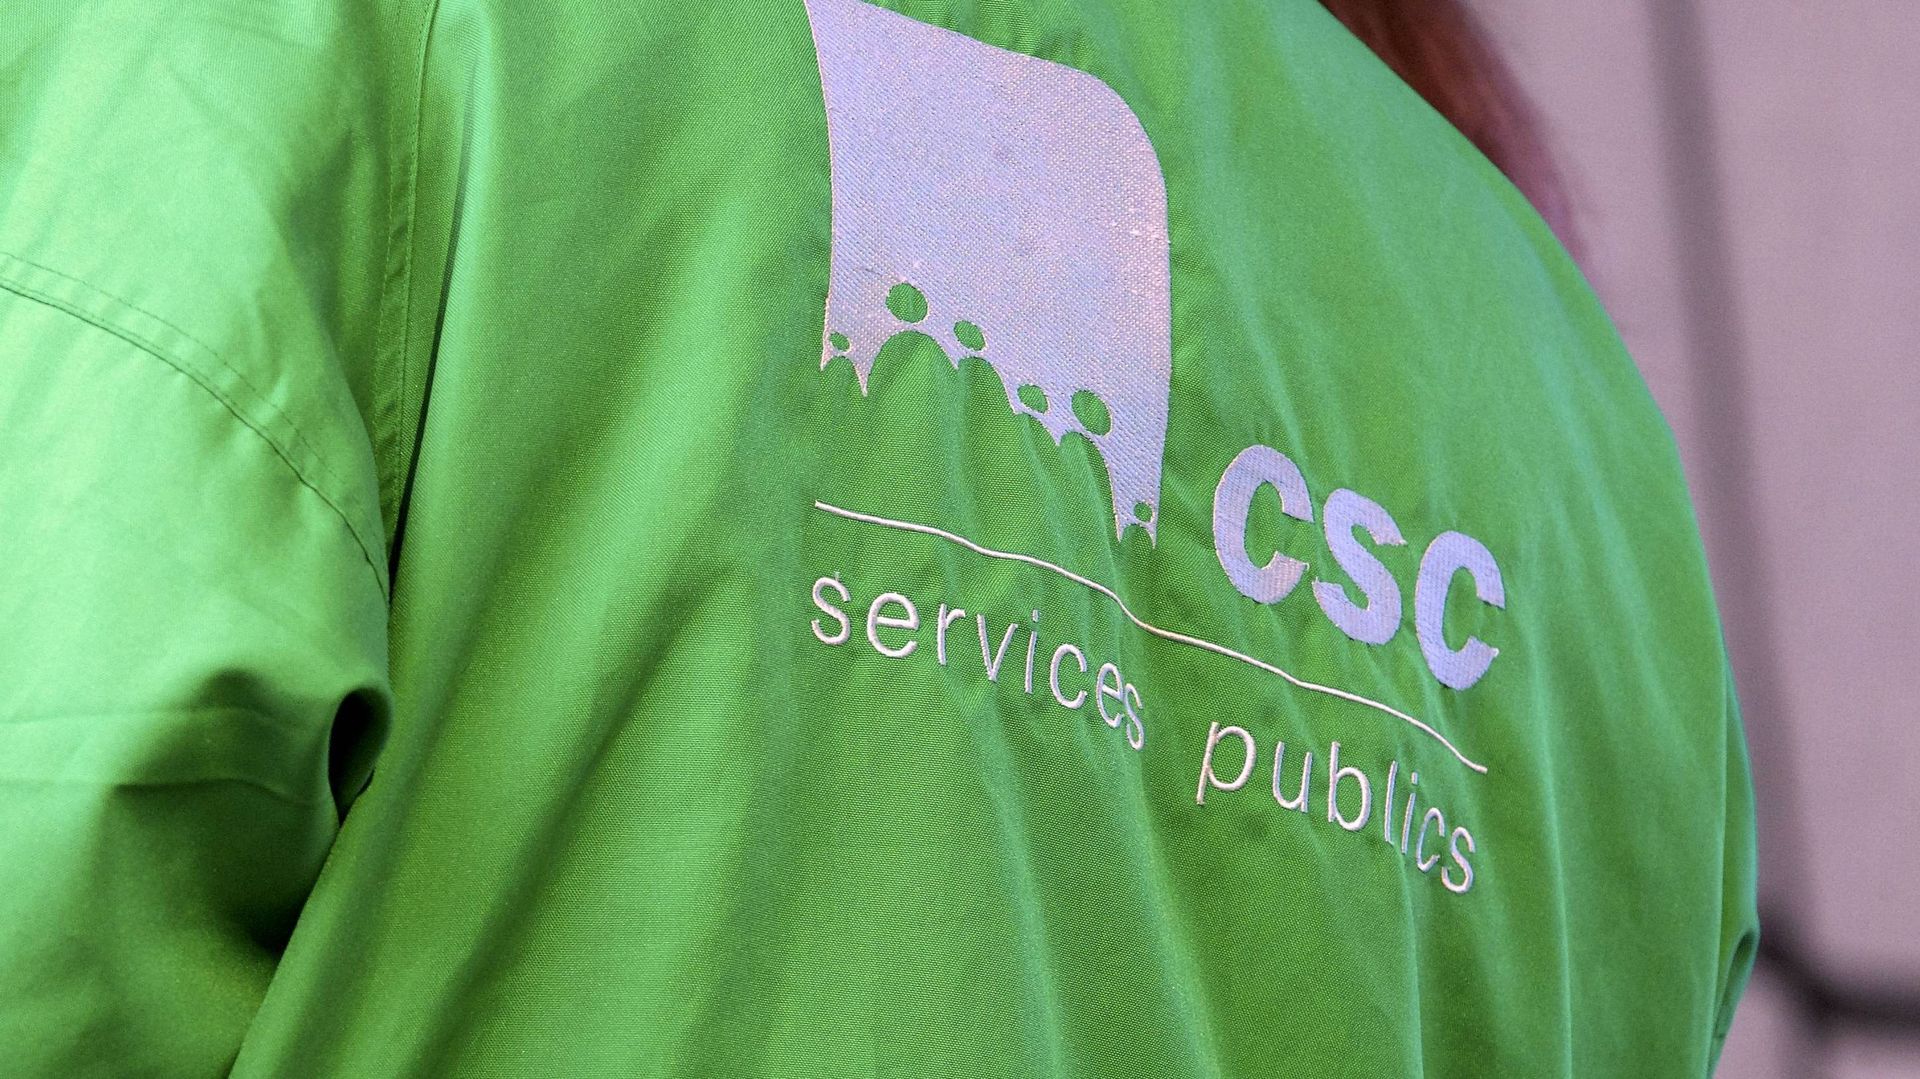 La CSC Services publics espère convaincre le gouvernement de revoir ses plans